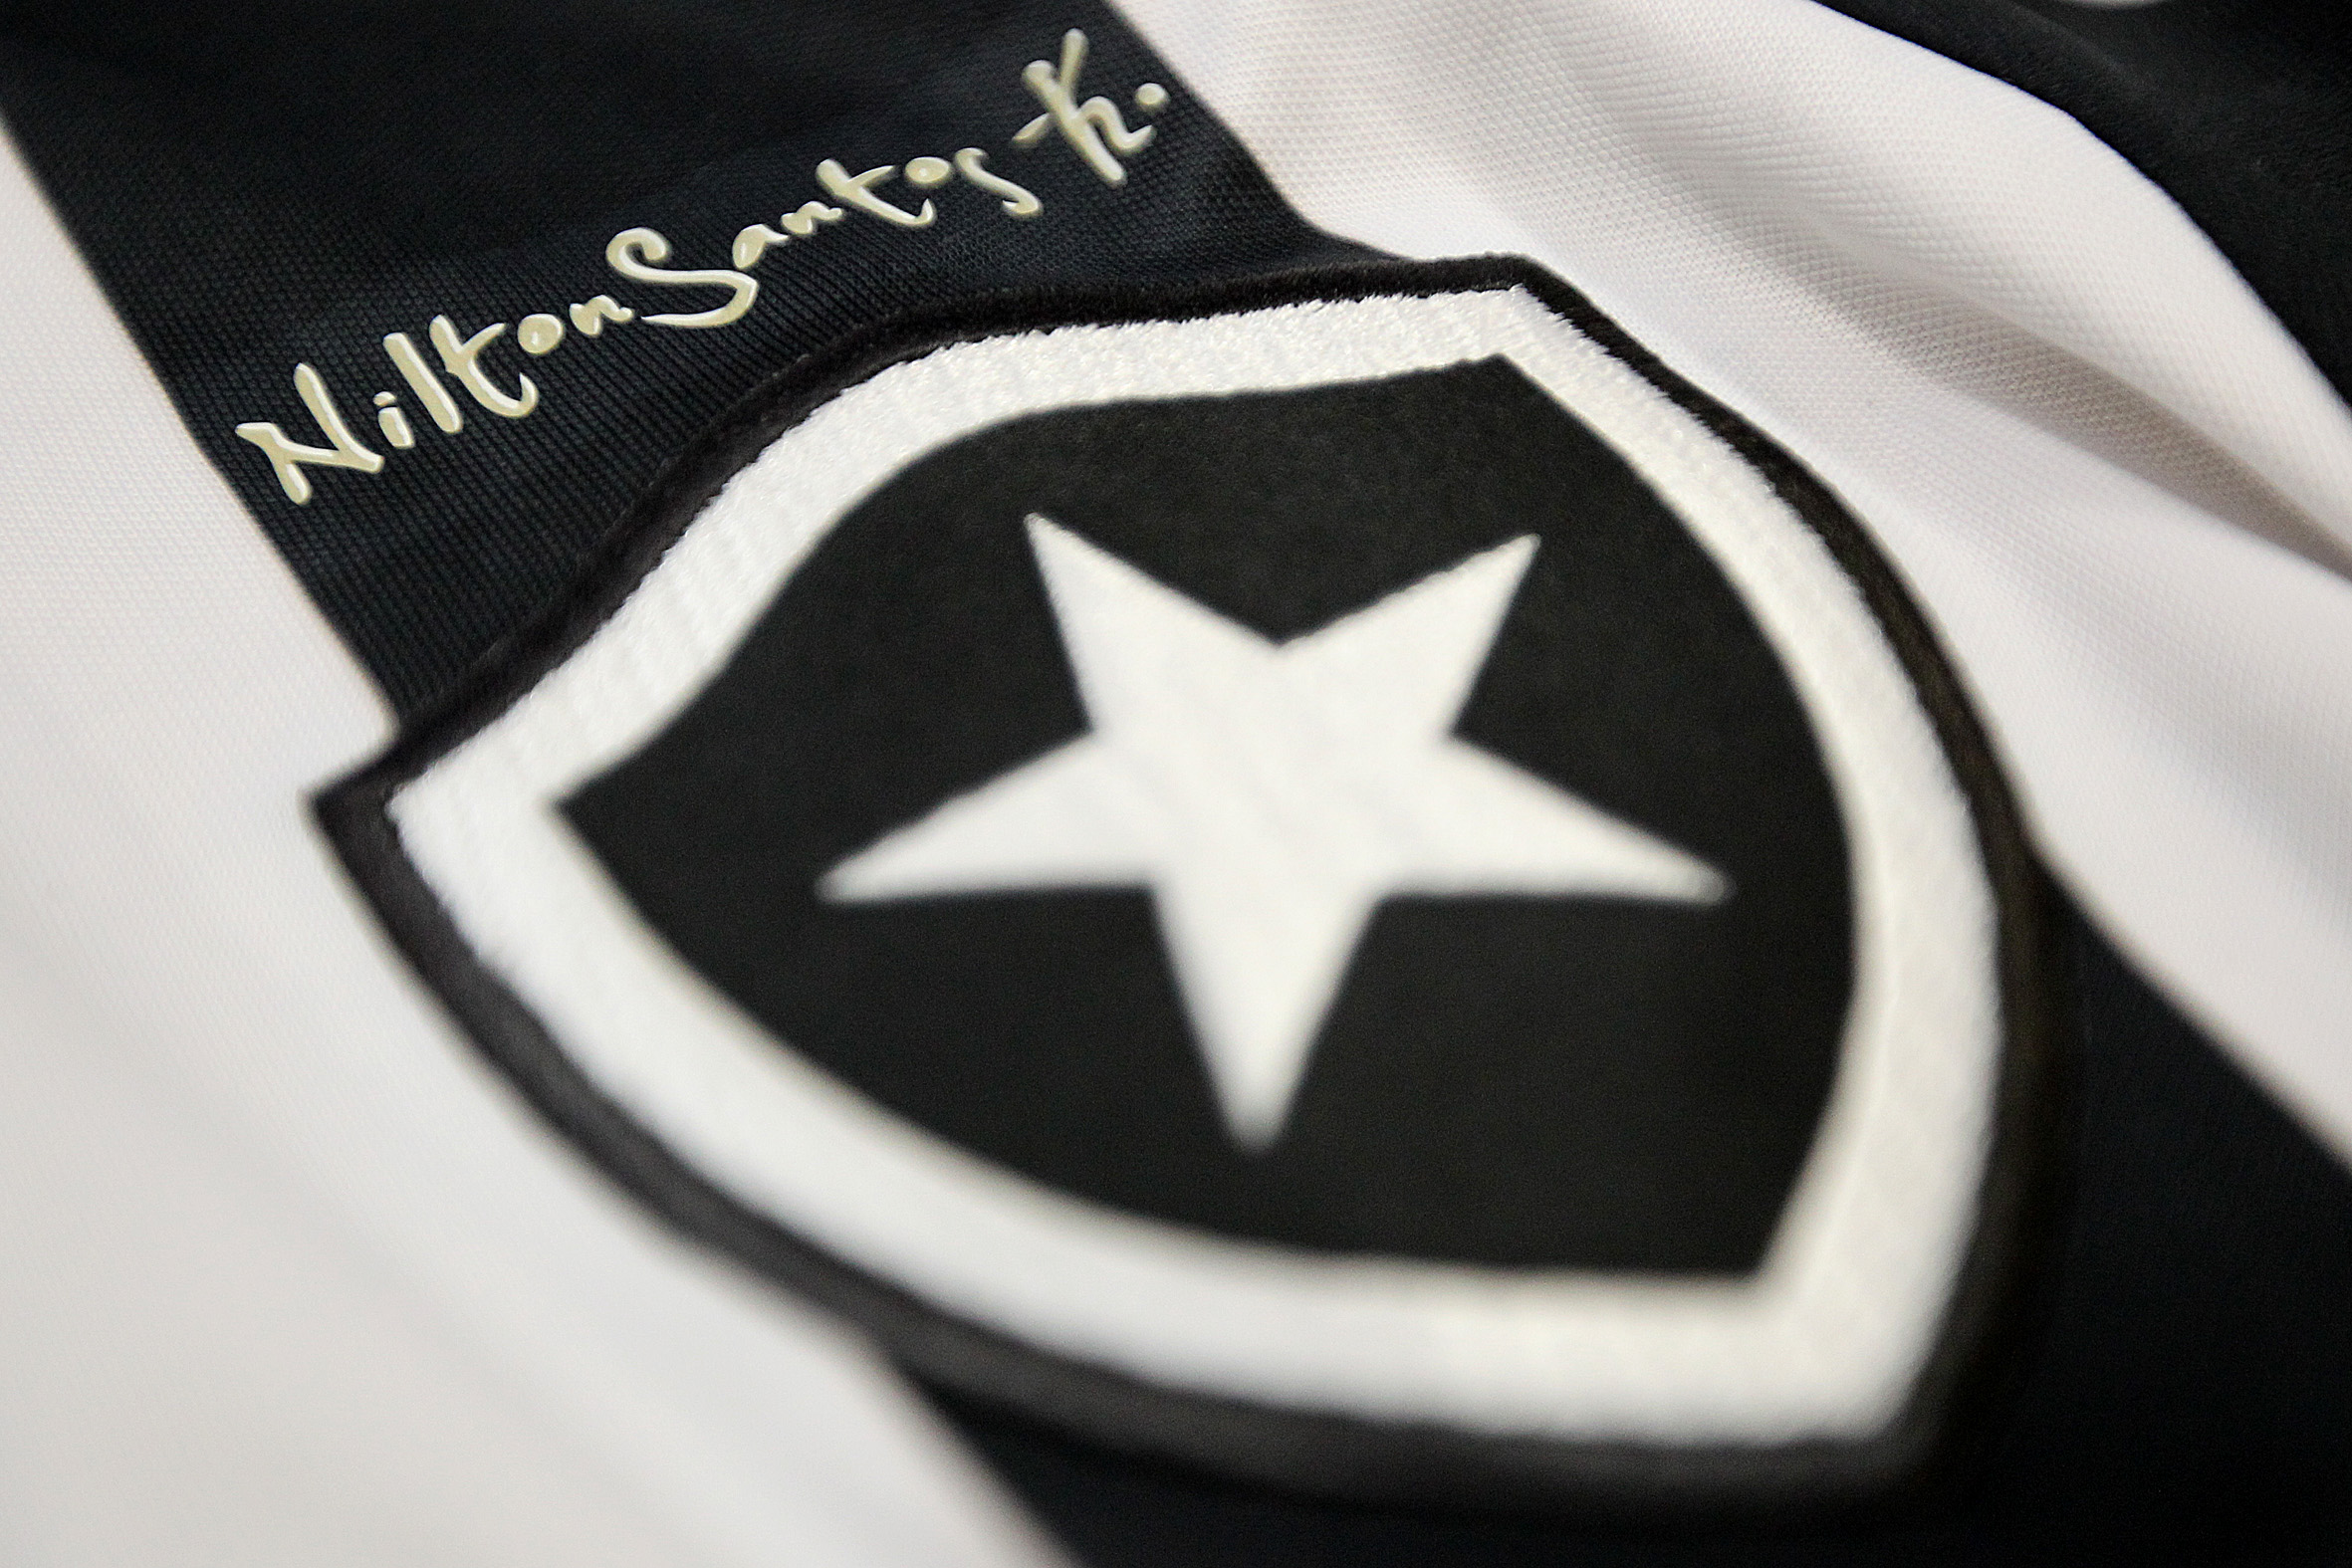 Camisa numero 6 do Botafogo durante apresentacao no Estadio Nilton Santos. 28 de janeiro de 2015, Rio de Janeiro, RJ, Brasil. Foto: Vitor Silva / SSPress.